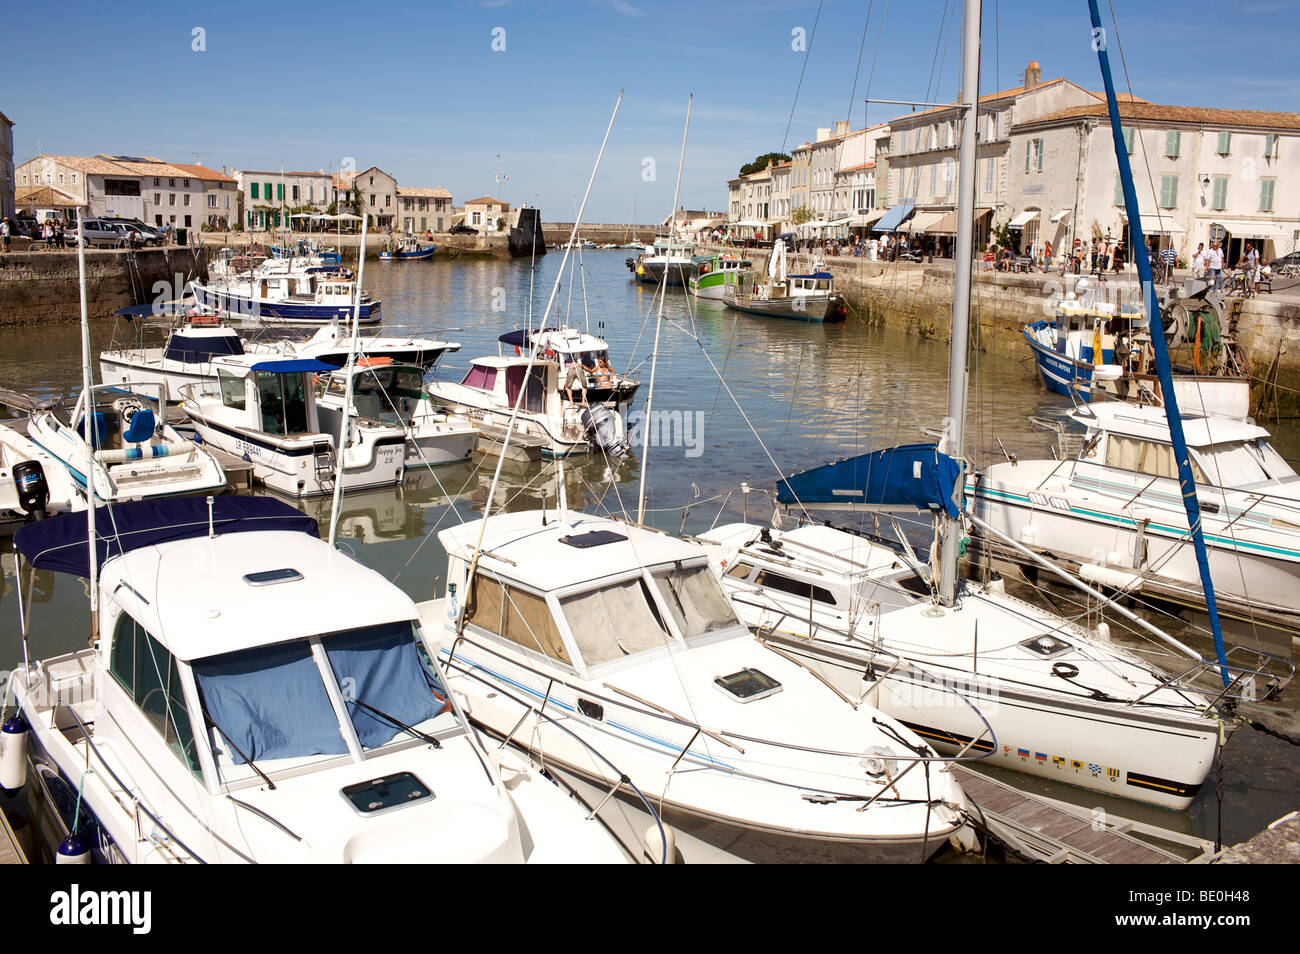 Harbour at St Martin de Re, ile de Re, France Stock Photo